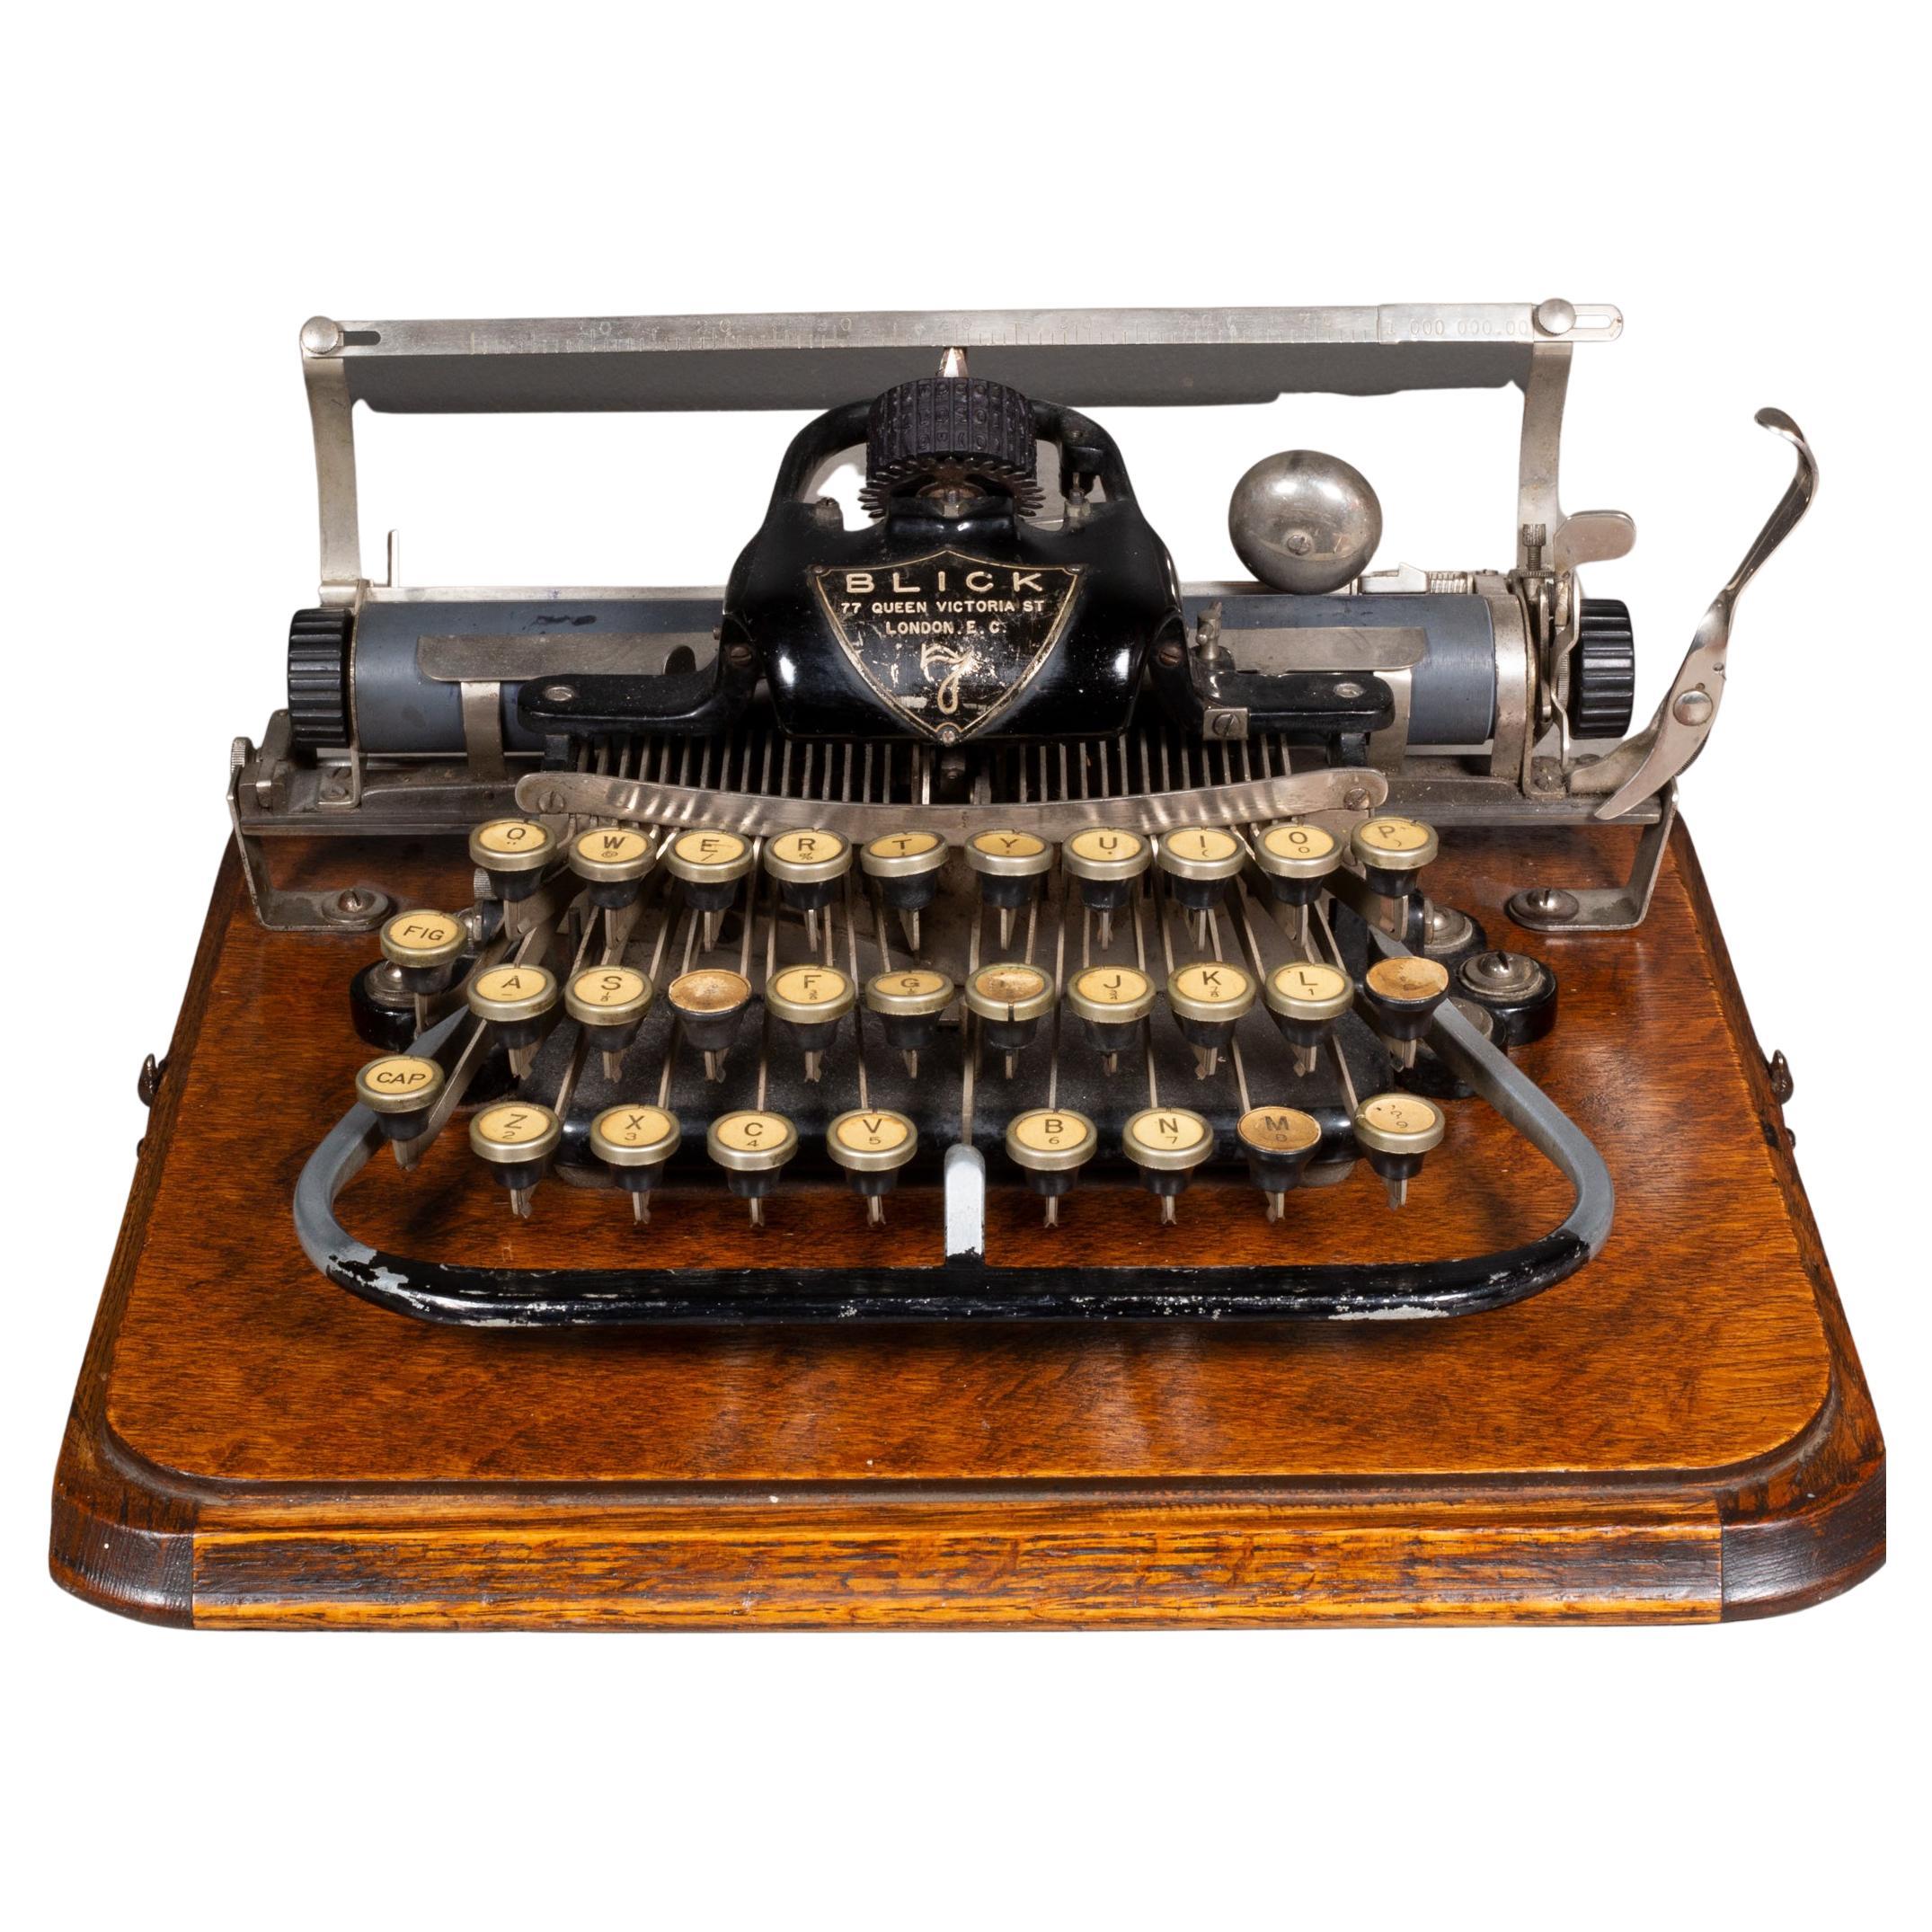 Ende 19. Jh. Blick #7 Schreibmaschine und Etui c.1890-1892